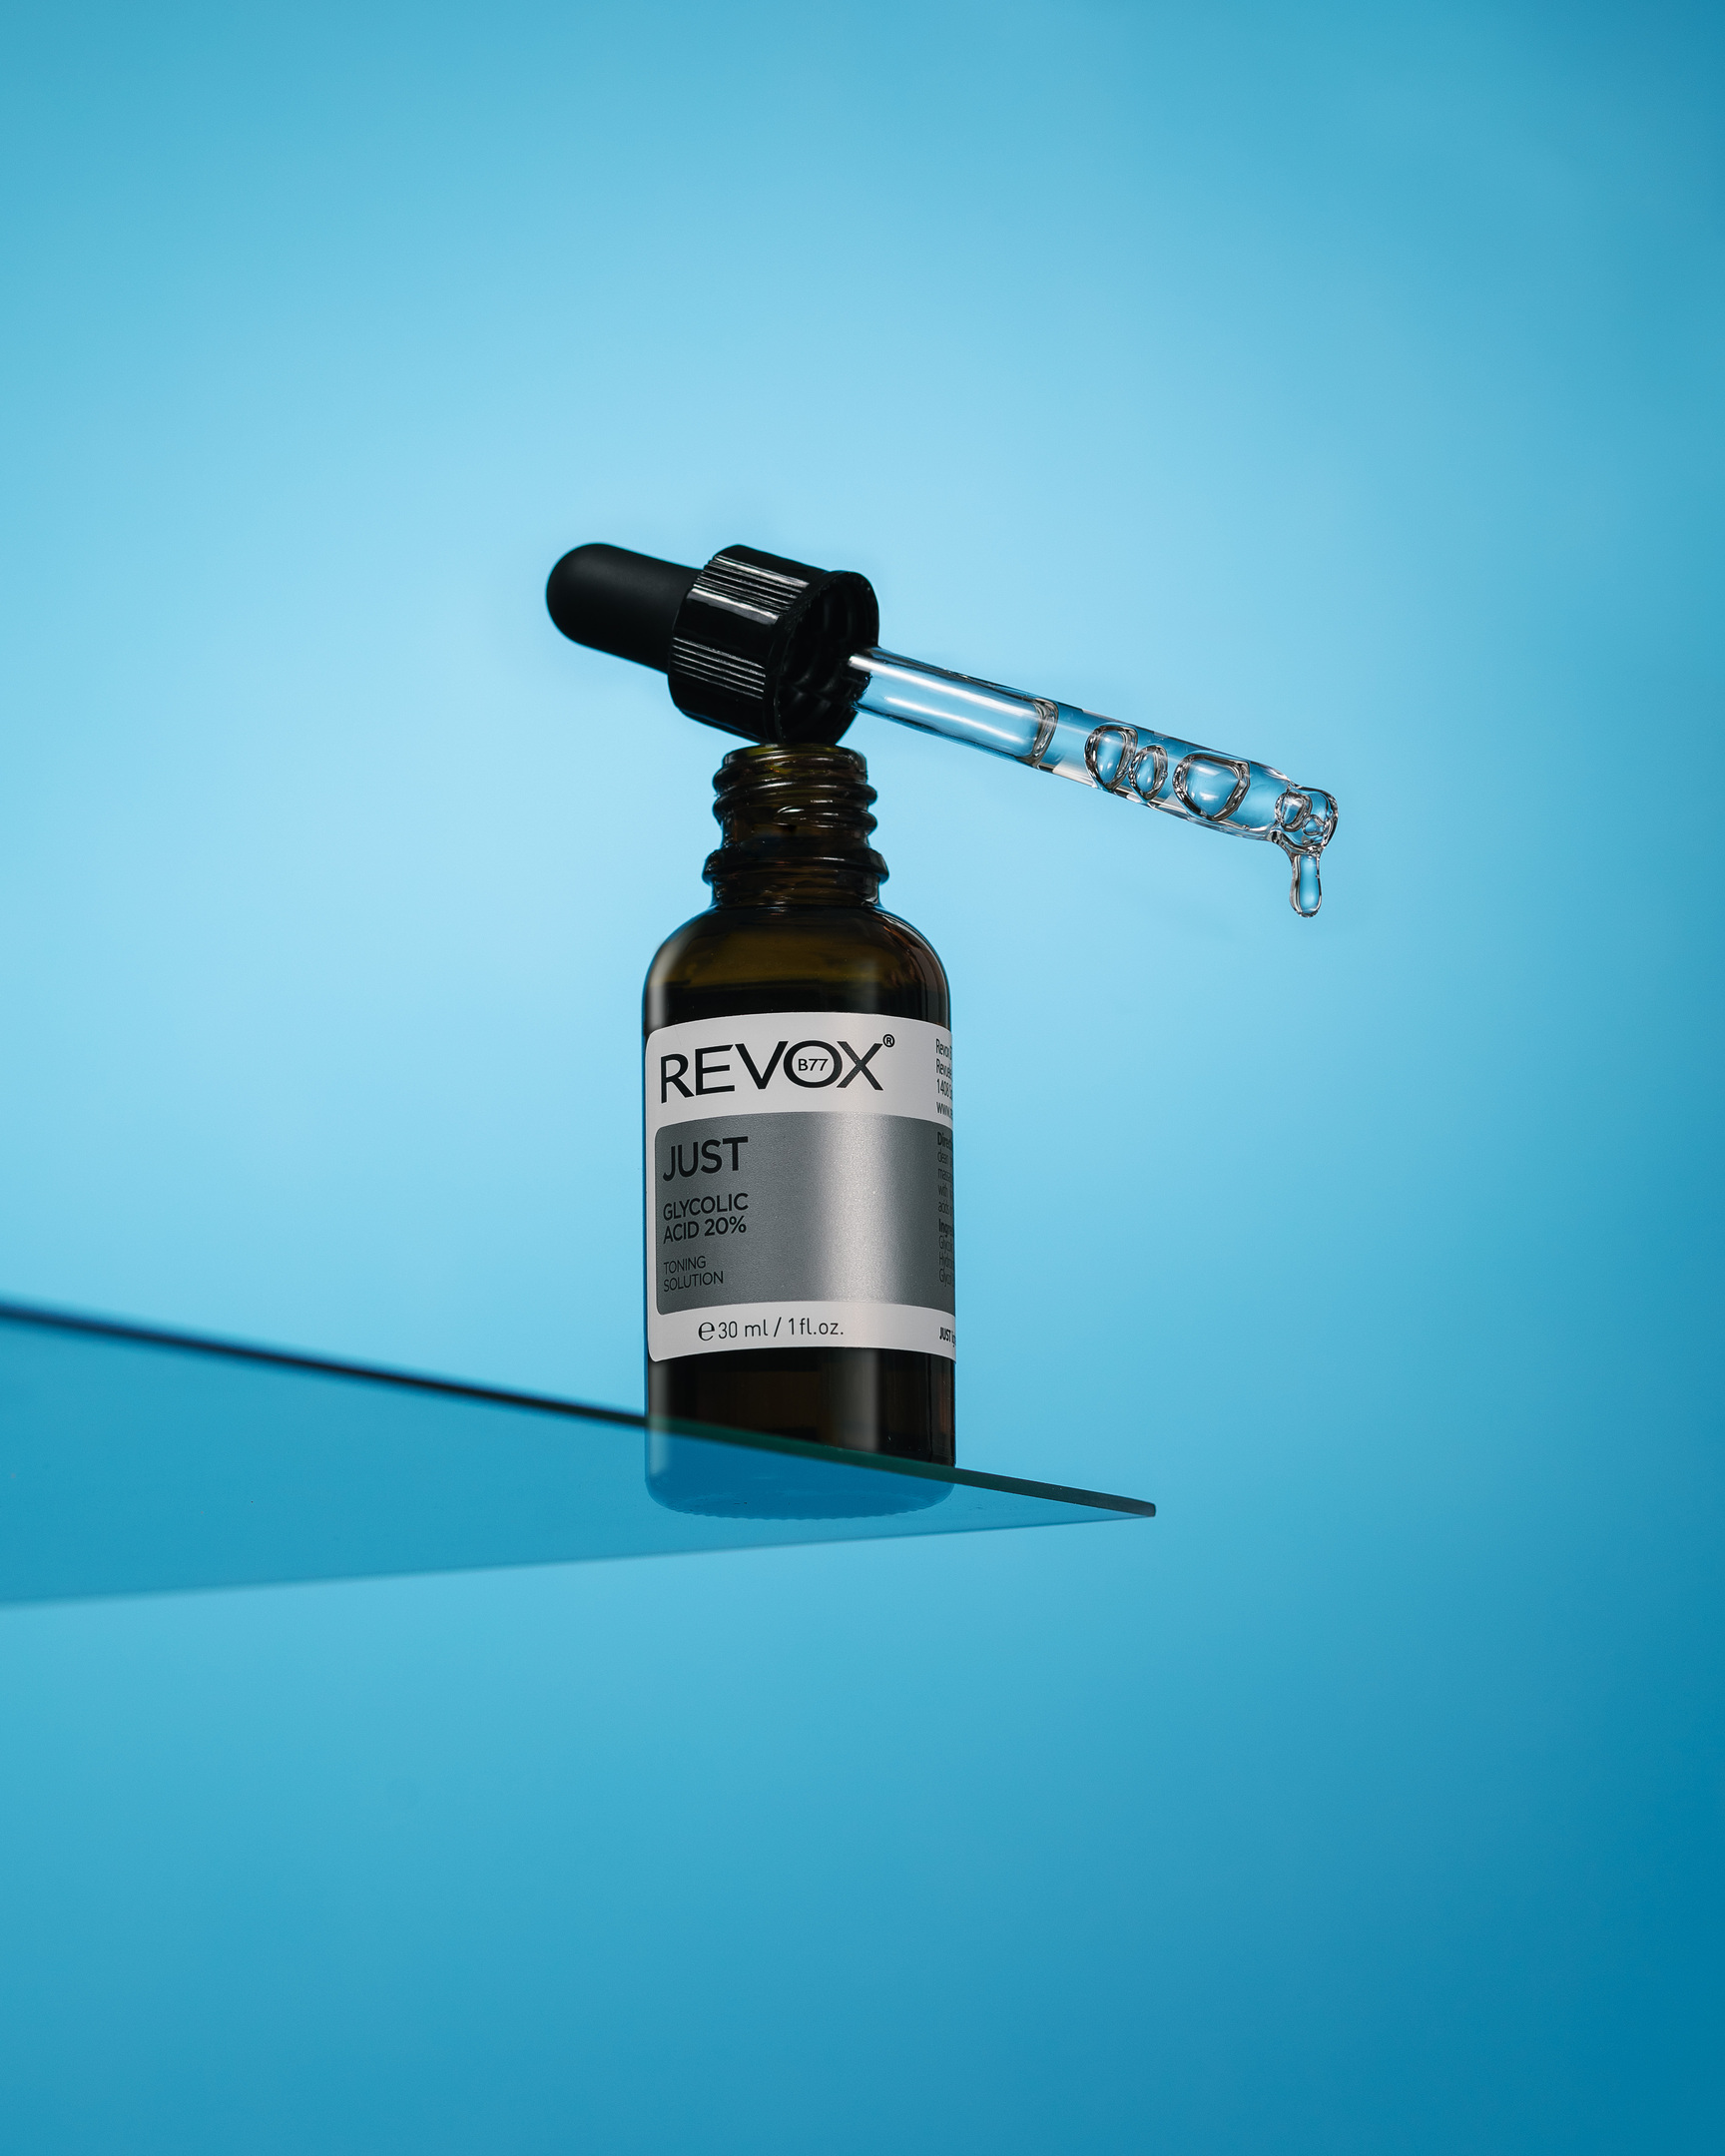 Revox - Just Glycolic Acid 20%. Бутилка е на ръба на чаша.